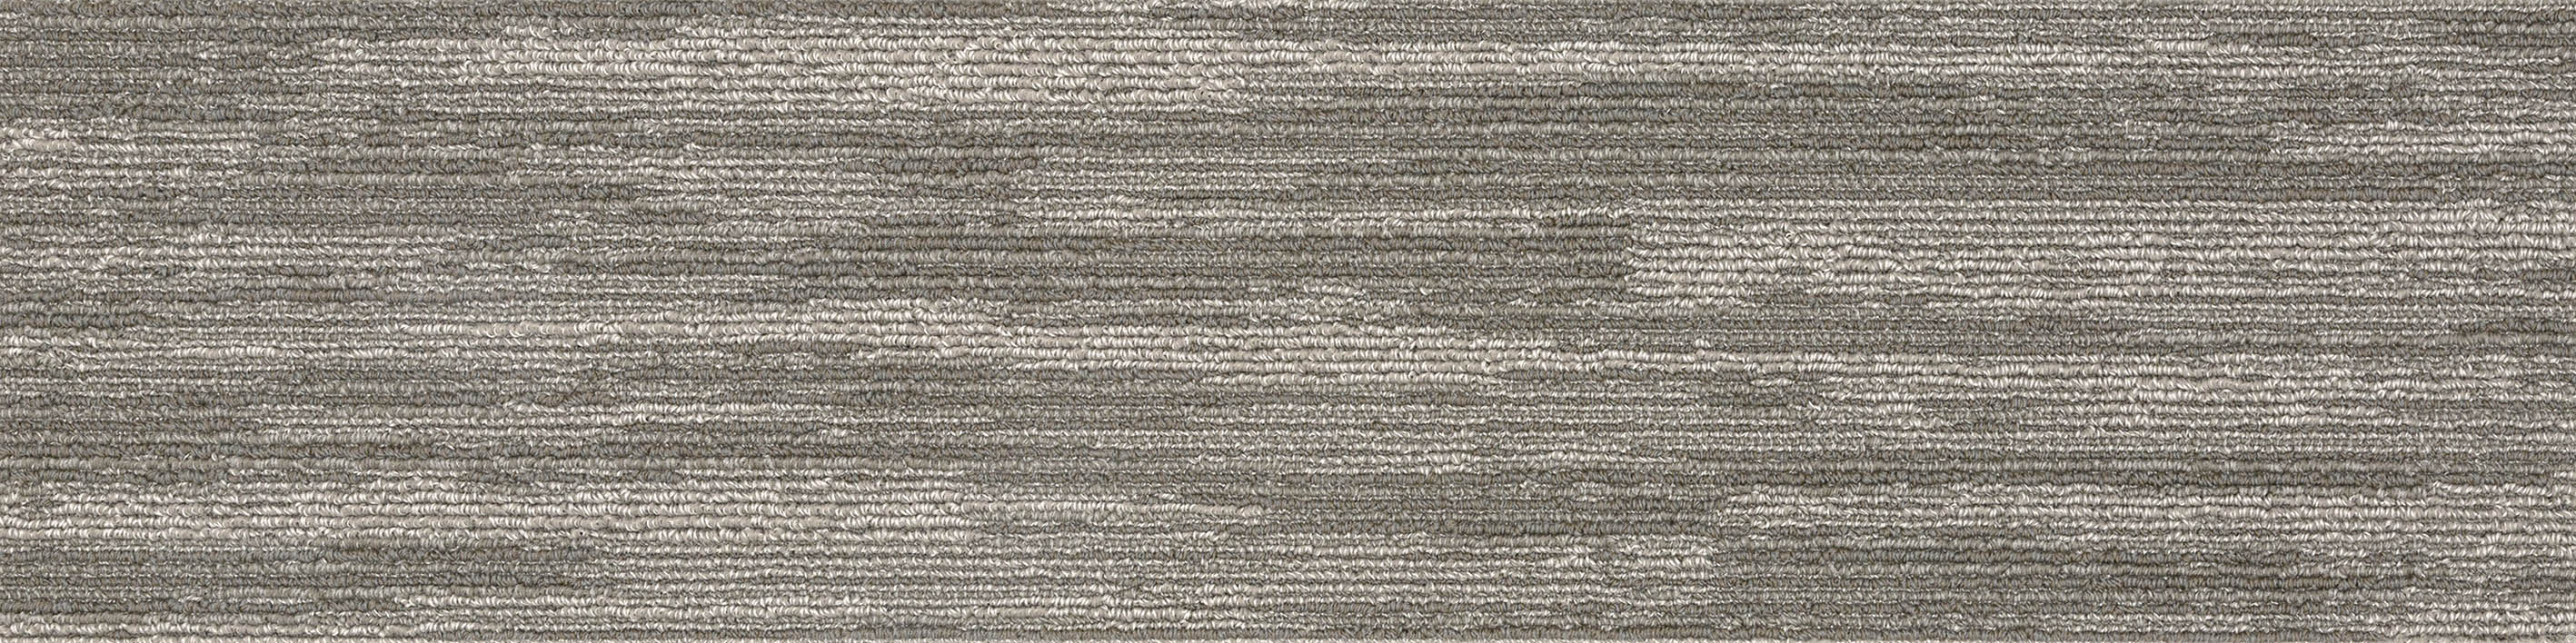 AB250-1 川島織物セルコン タイルカーペット モードスタイル シアトルプリーツ 川島織物セルコン タイルカーペット